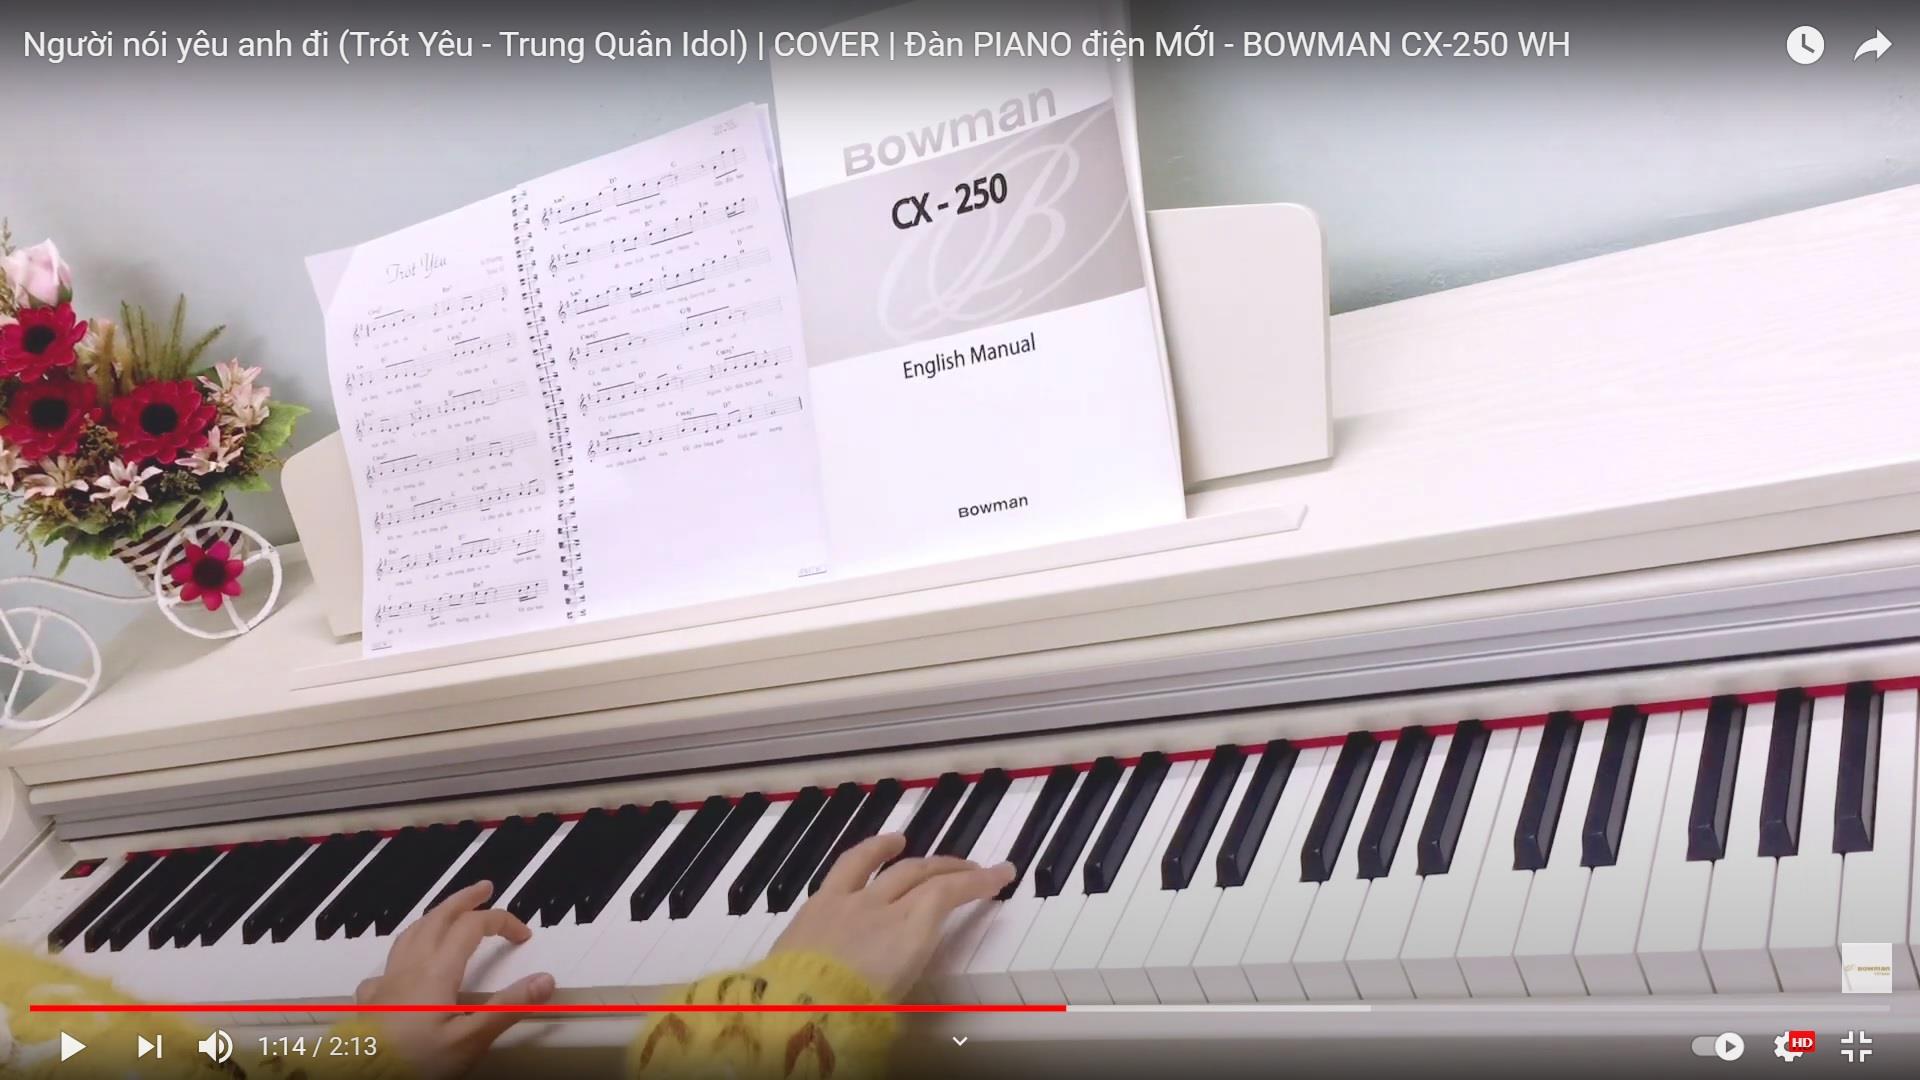 Người nói yêu anh đi (Trót Yêu - Trung Quân Idol) | COVER | Đàn PIANO điện MỚI - BOWMAN CX-250 WH